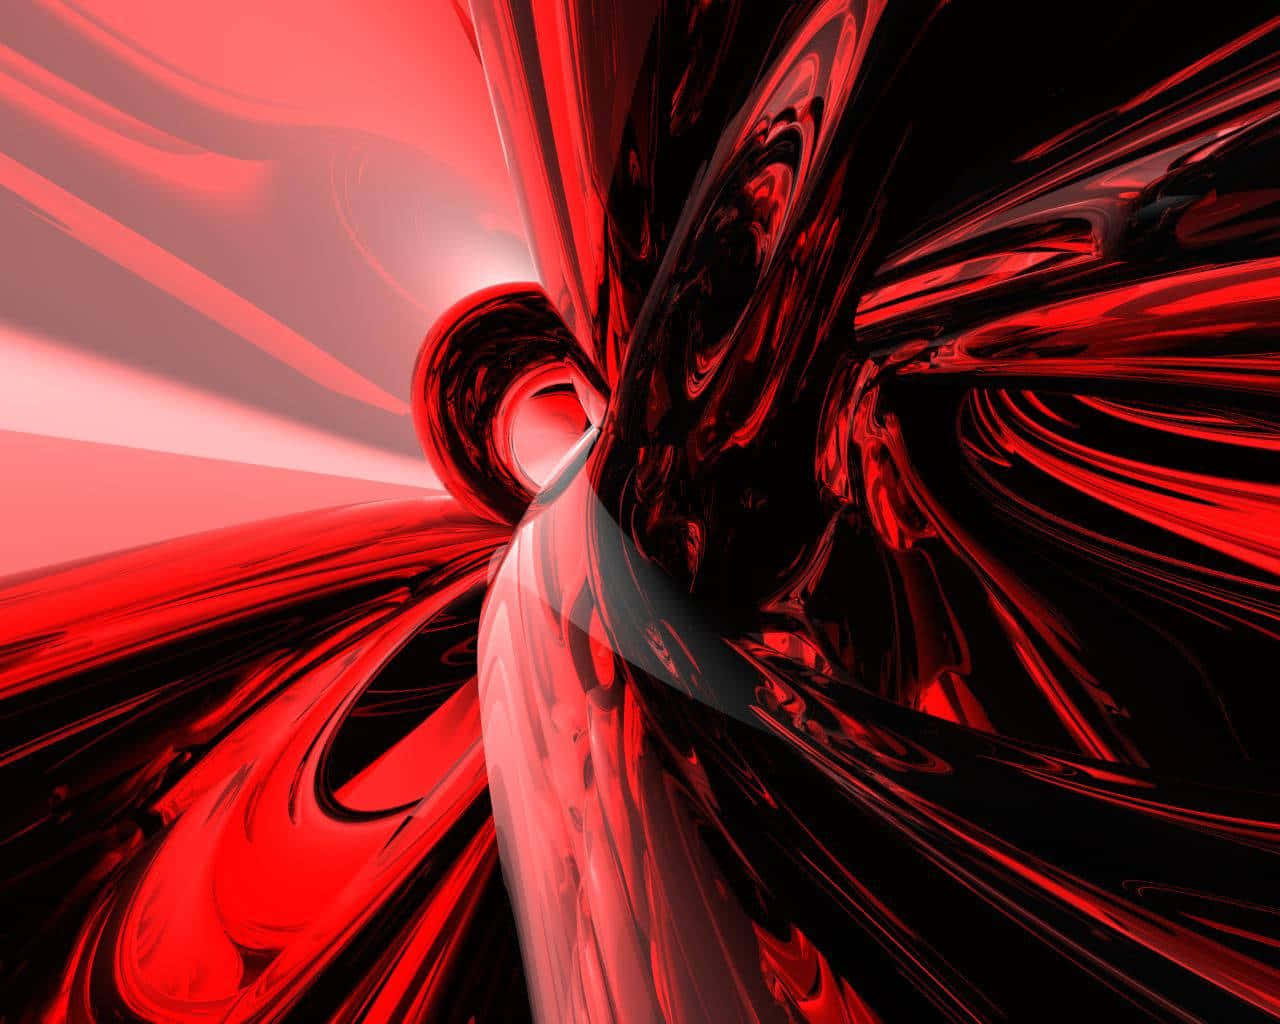 Unosfondo Astratto Rosso Con Swirls In Bianco E Nero